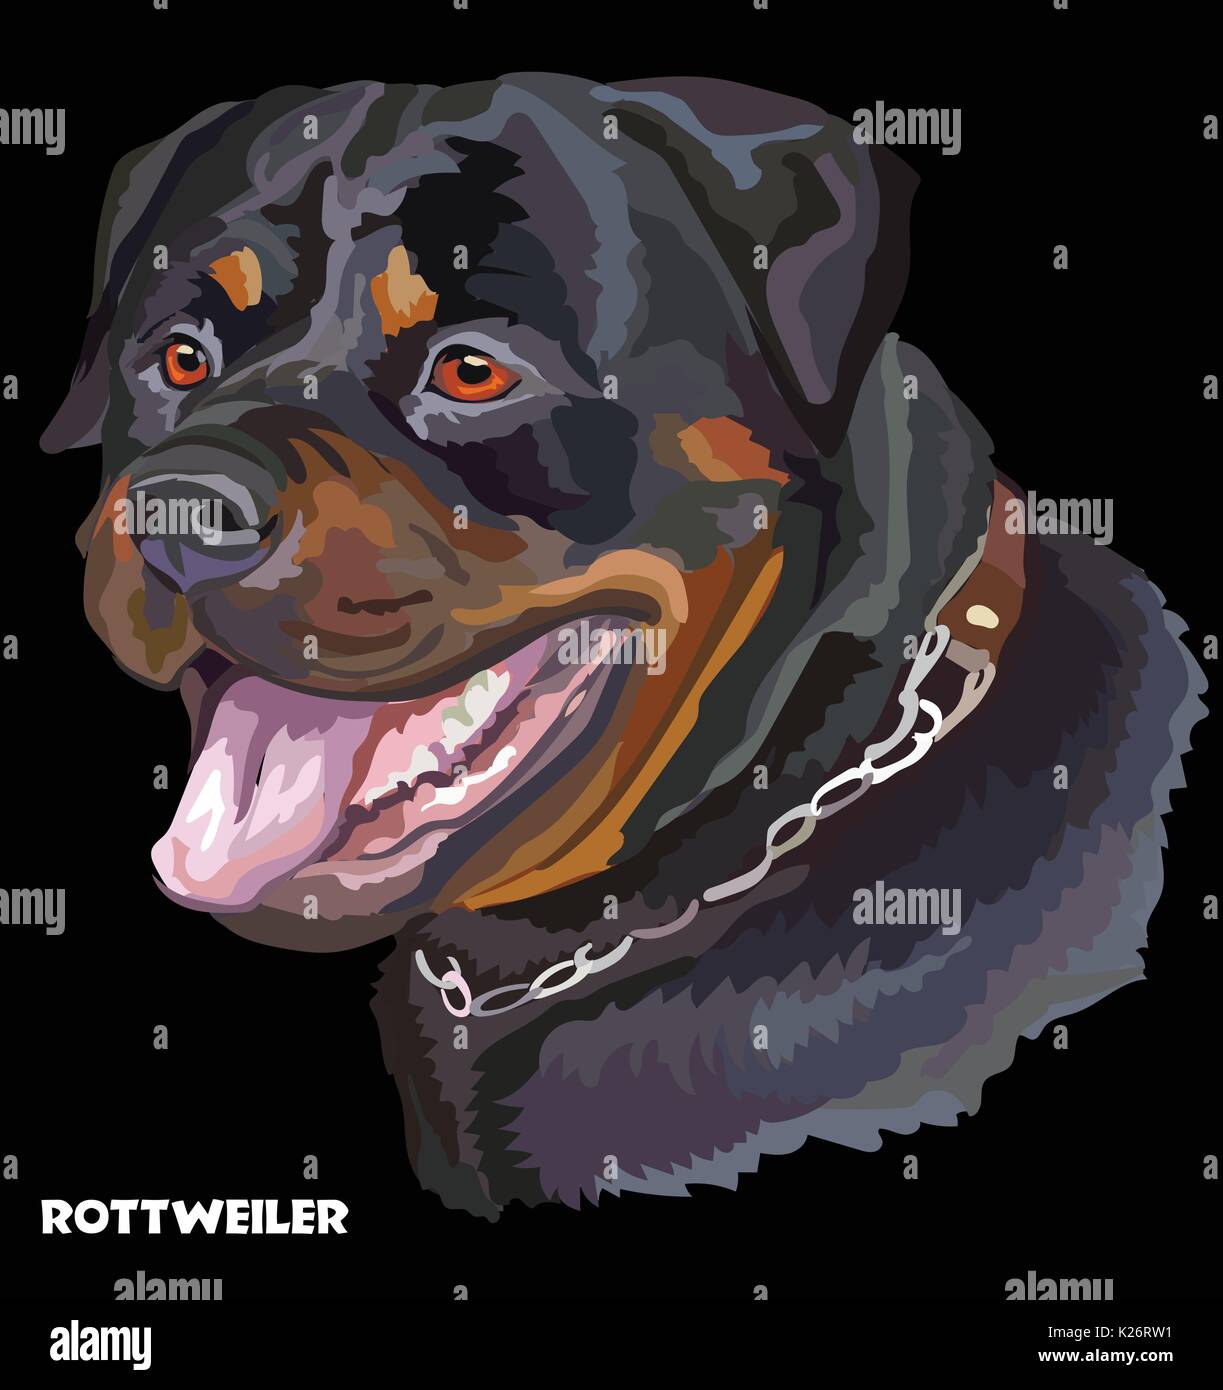 Ritratto colorato di Rottweiler isolato illustrazione vettoriale su sfondo nero Illustrazione Vettoriale